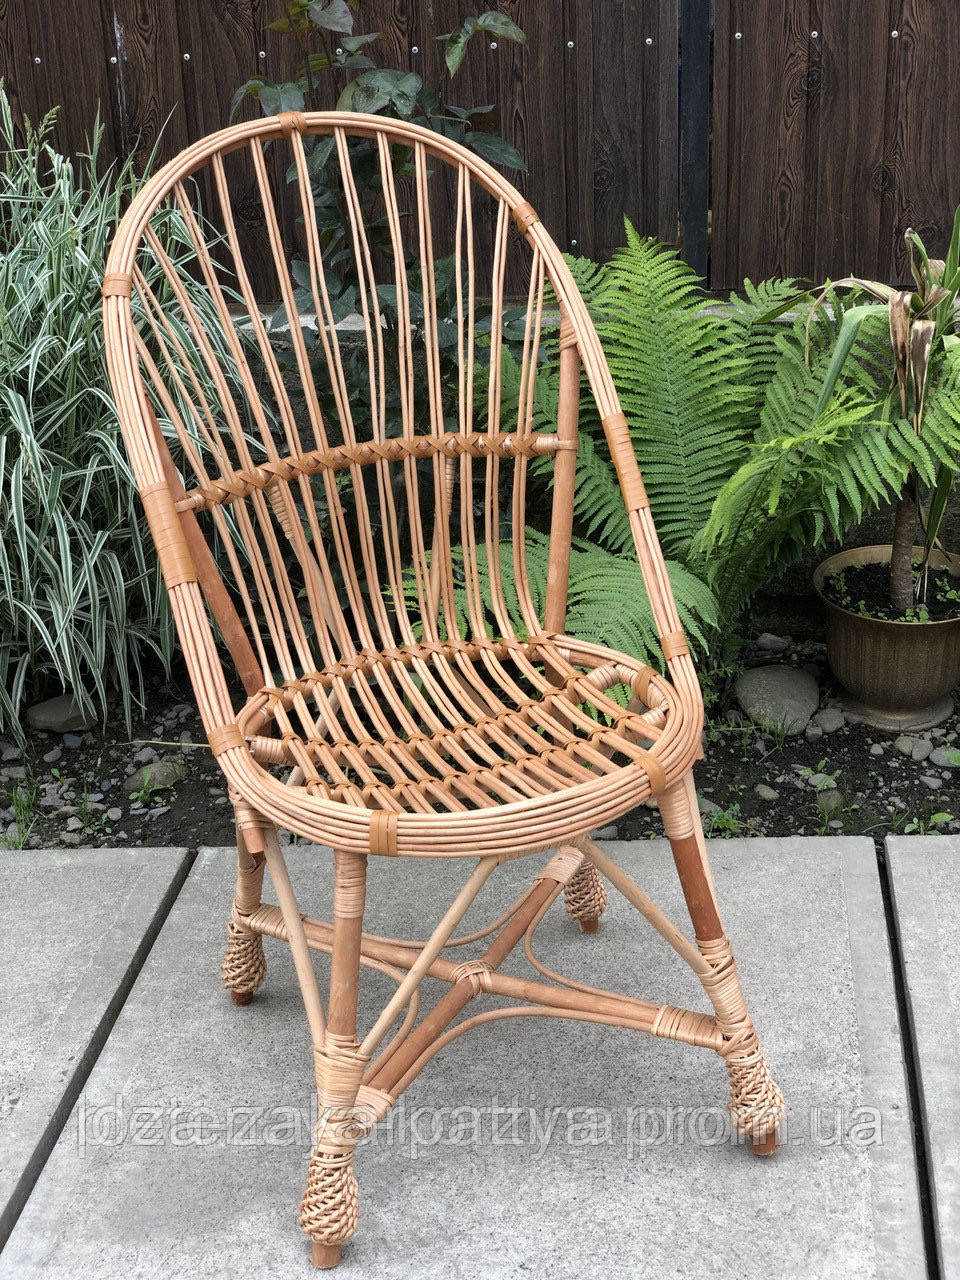 

Плетёное кресло из лозы "ракушка"